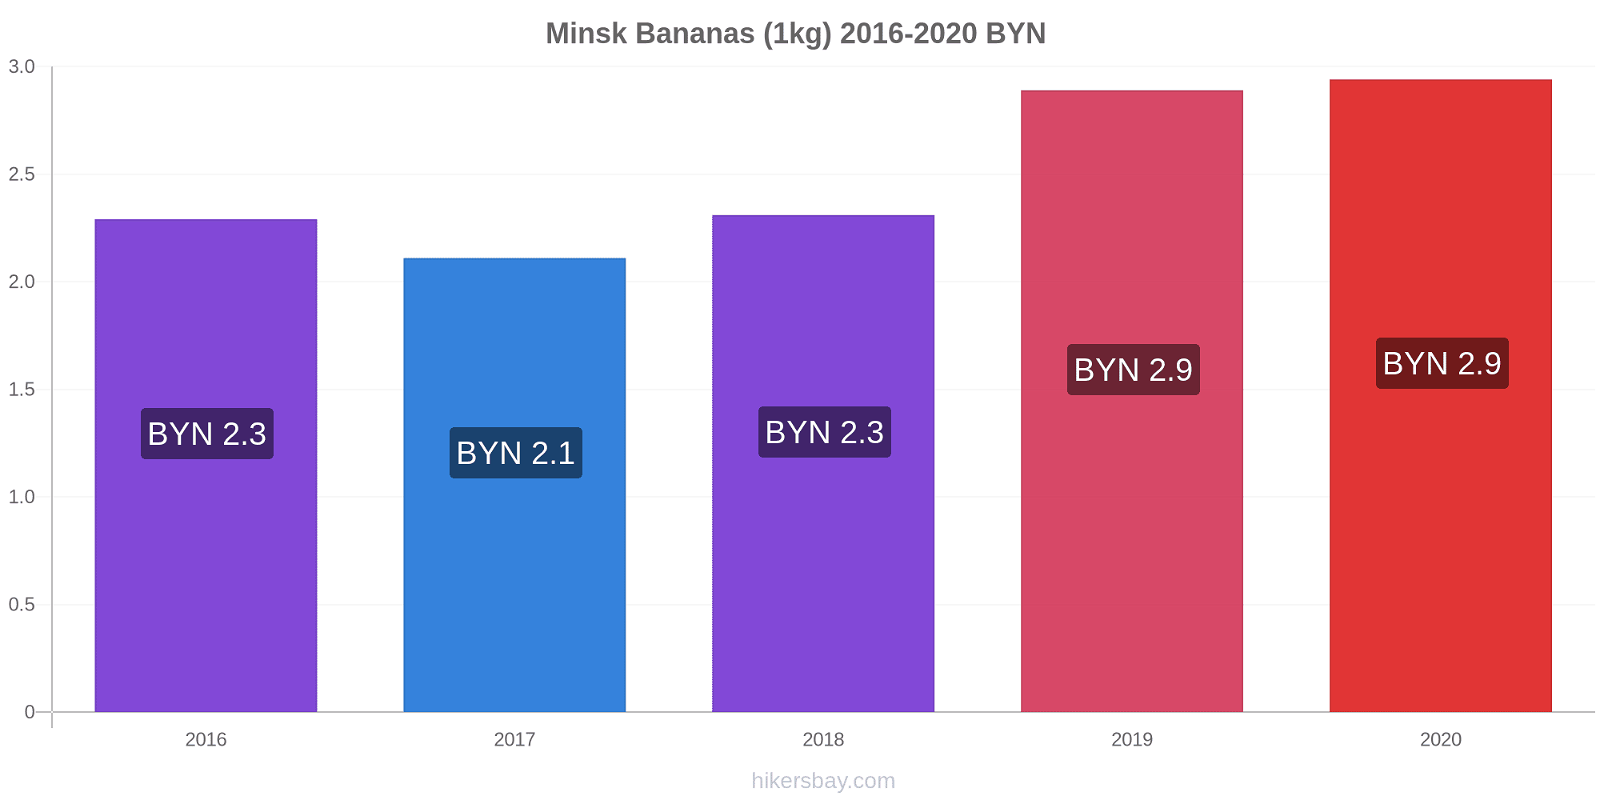 Minsk variação de preço Banana (1kg) hikersbay.com